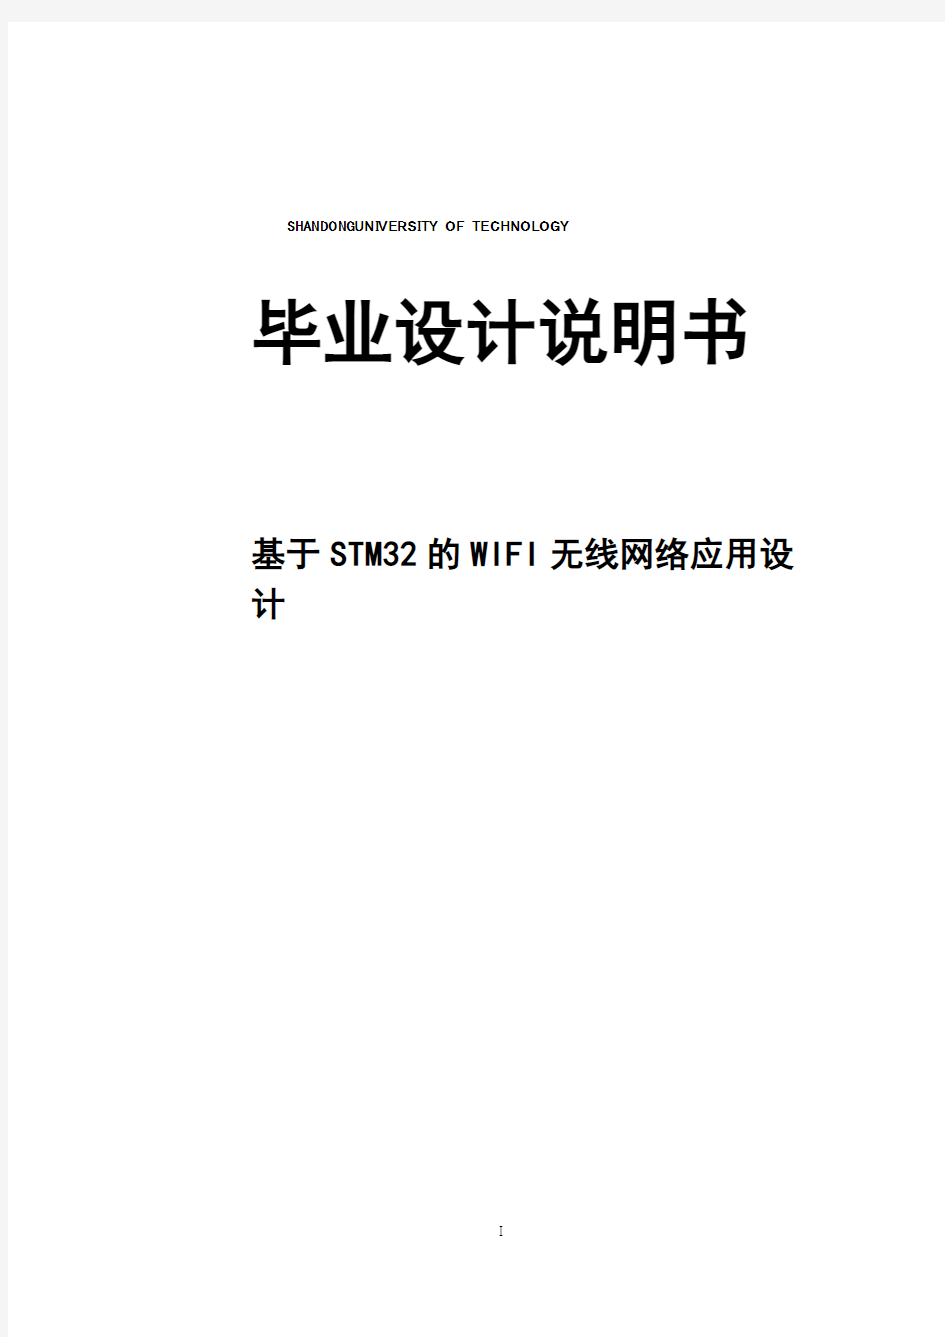 【完整版】基于STM32的WIFI无线网络应用设计毕业论文设计说明书